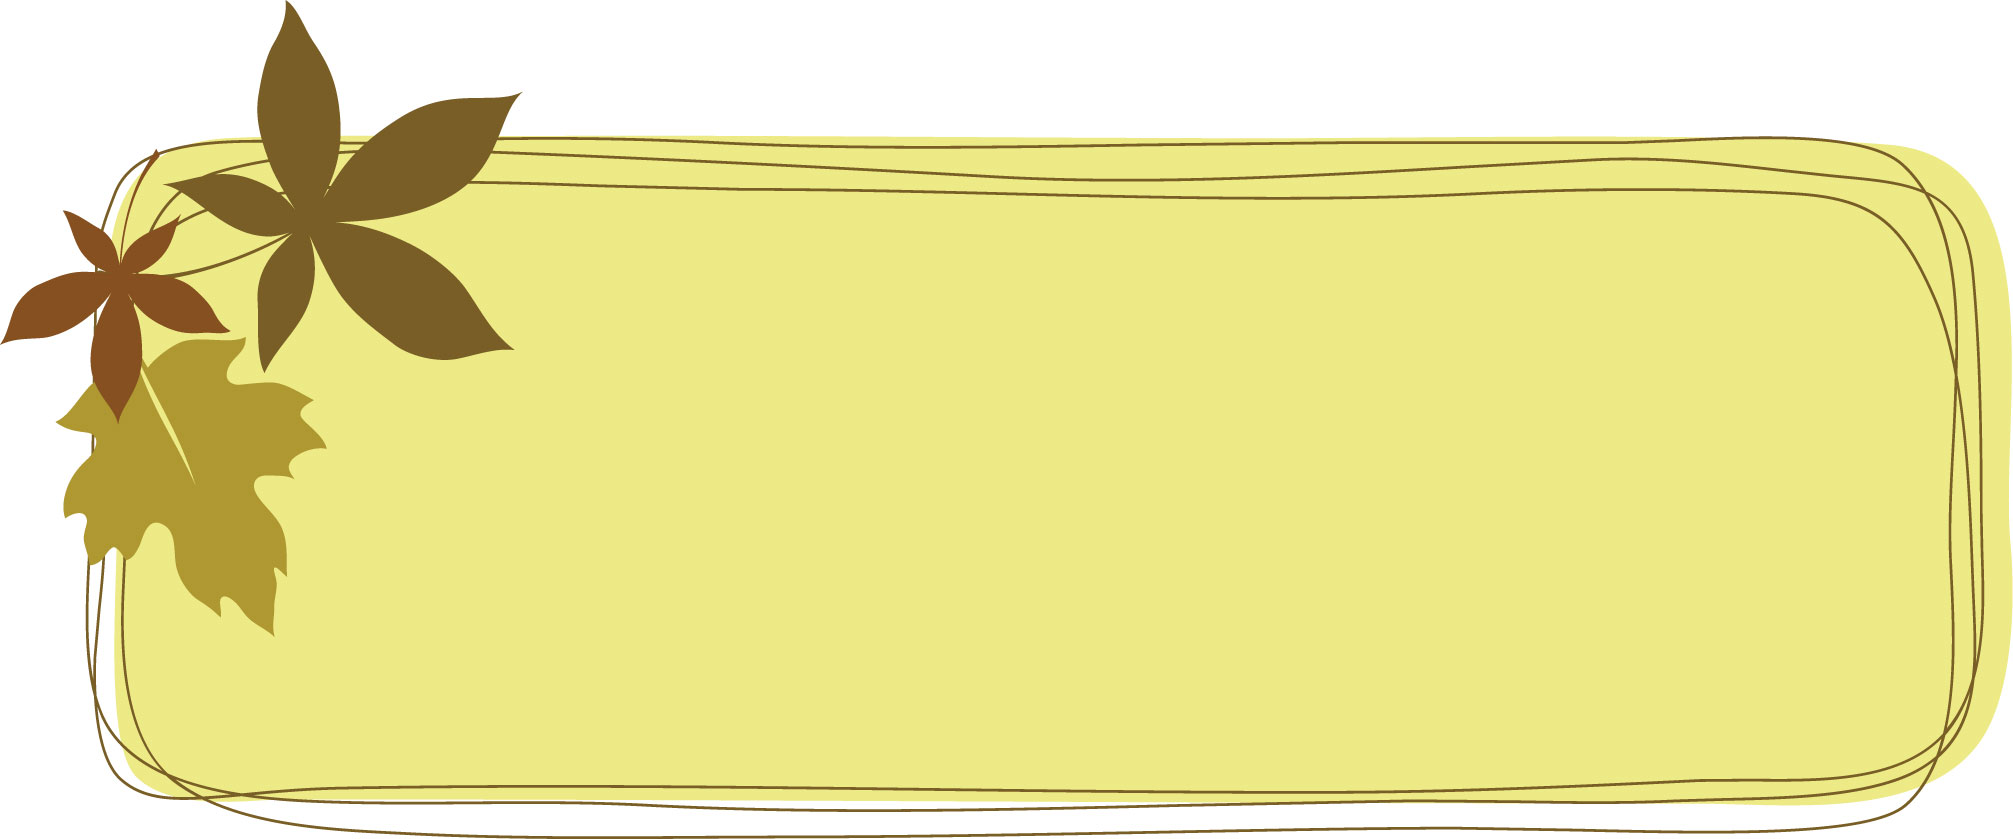 葉っぱ 草木のイラスト フリー素材 フレーム枠no 011 かえで 黄緑